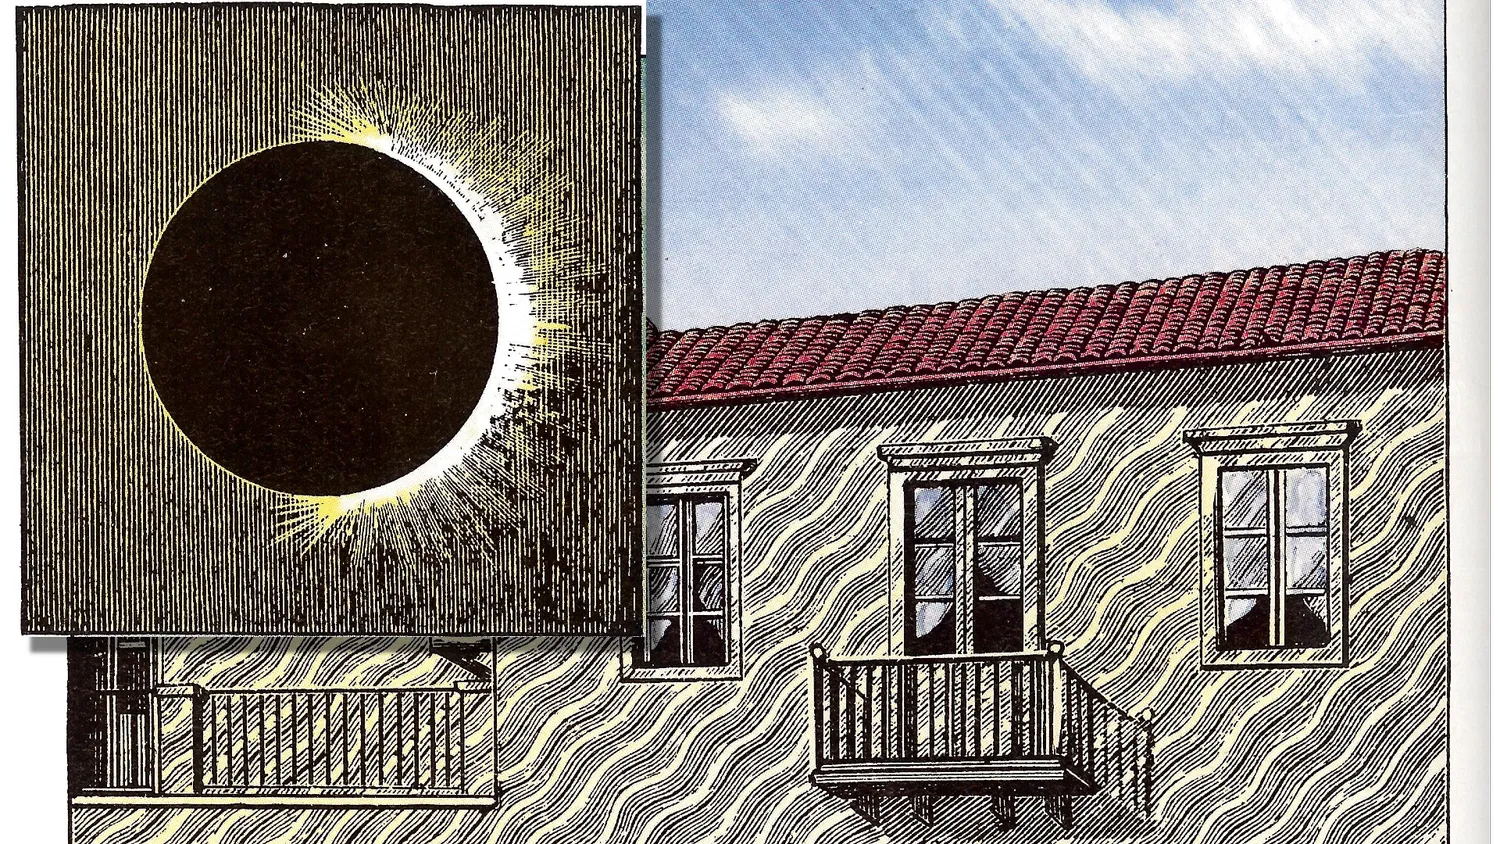 eine Zeichnung eines Hauses während einer Sonnenfinsternis; auf der Außenseite des Hauses sind wellenförmige Schattenlinien zu sehen